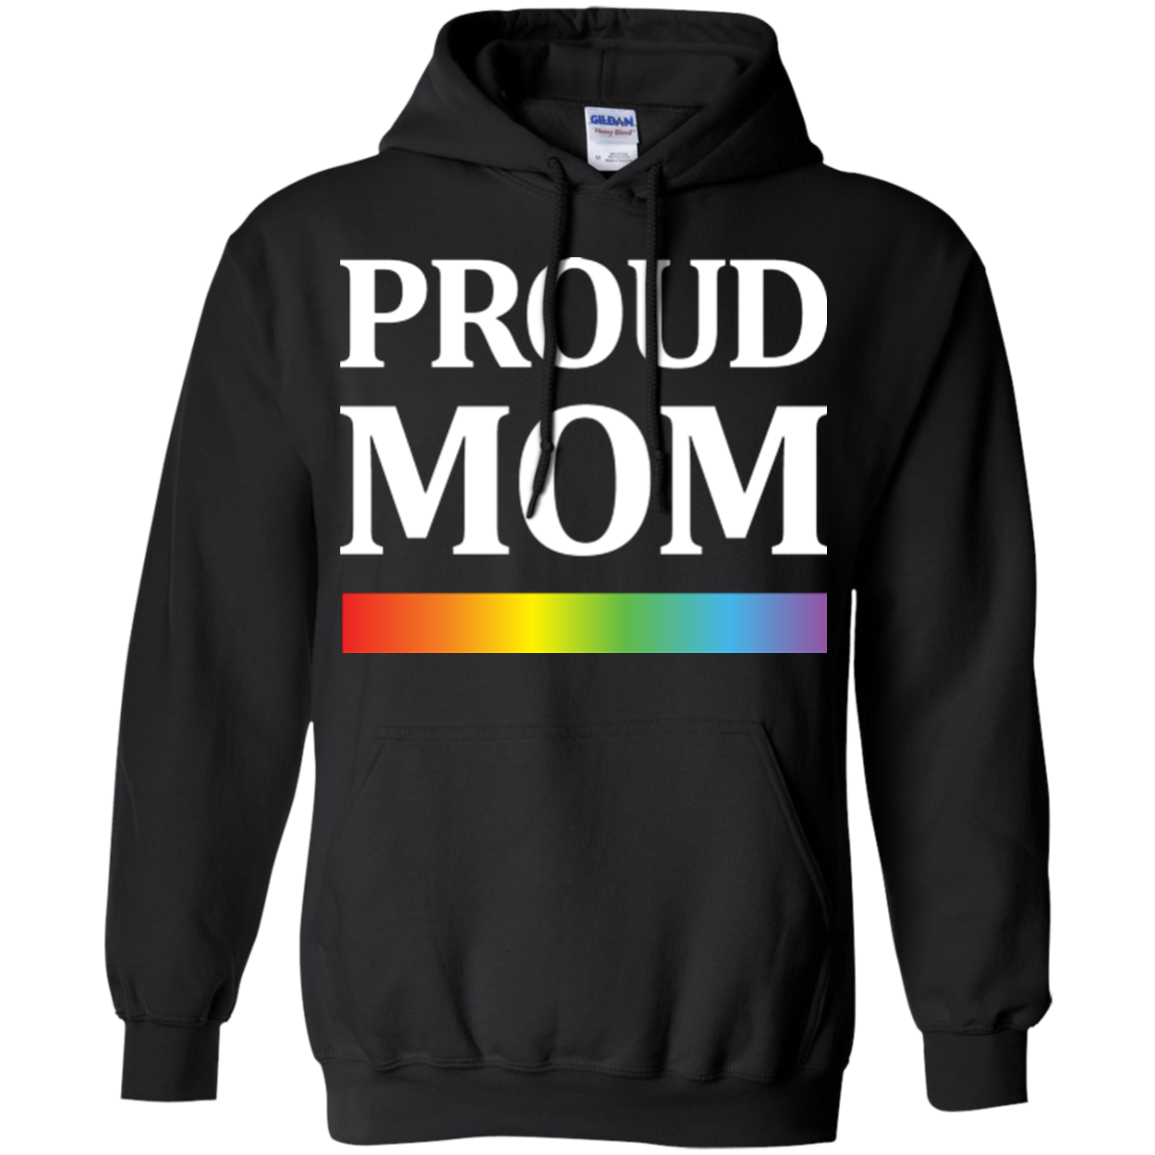 LGBT Pride "Proud Mom" Black Hoodie For Men & Women